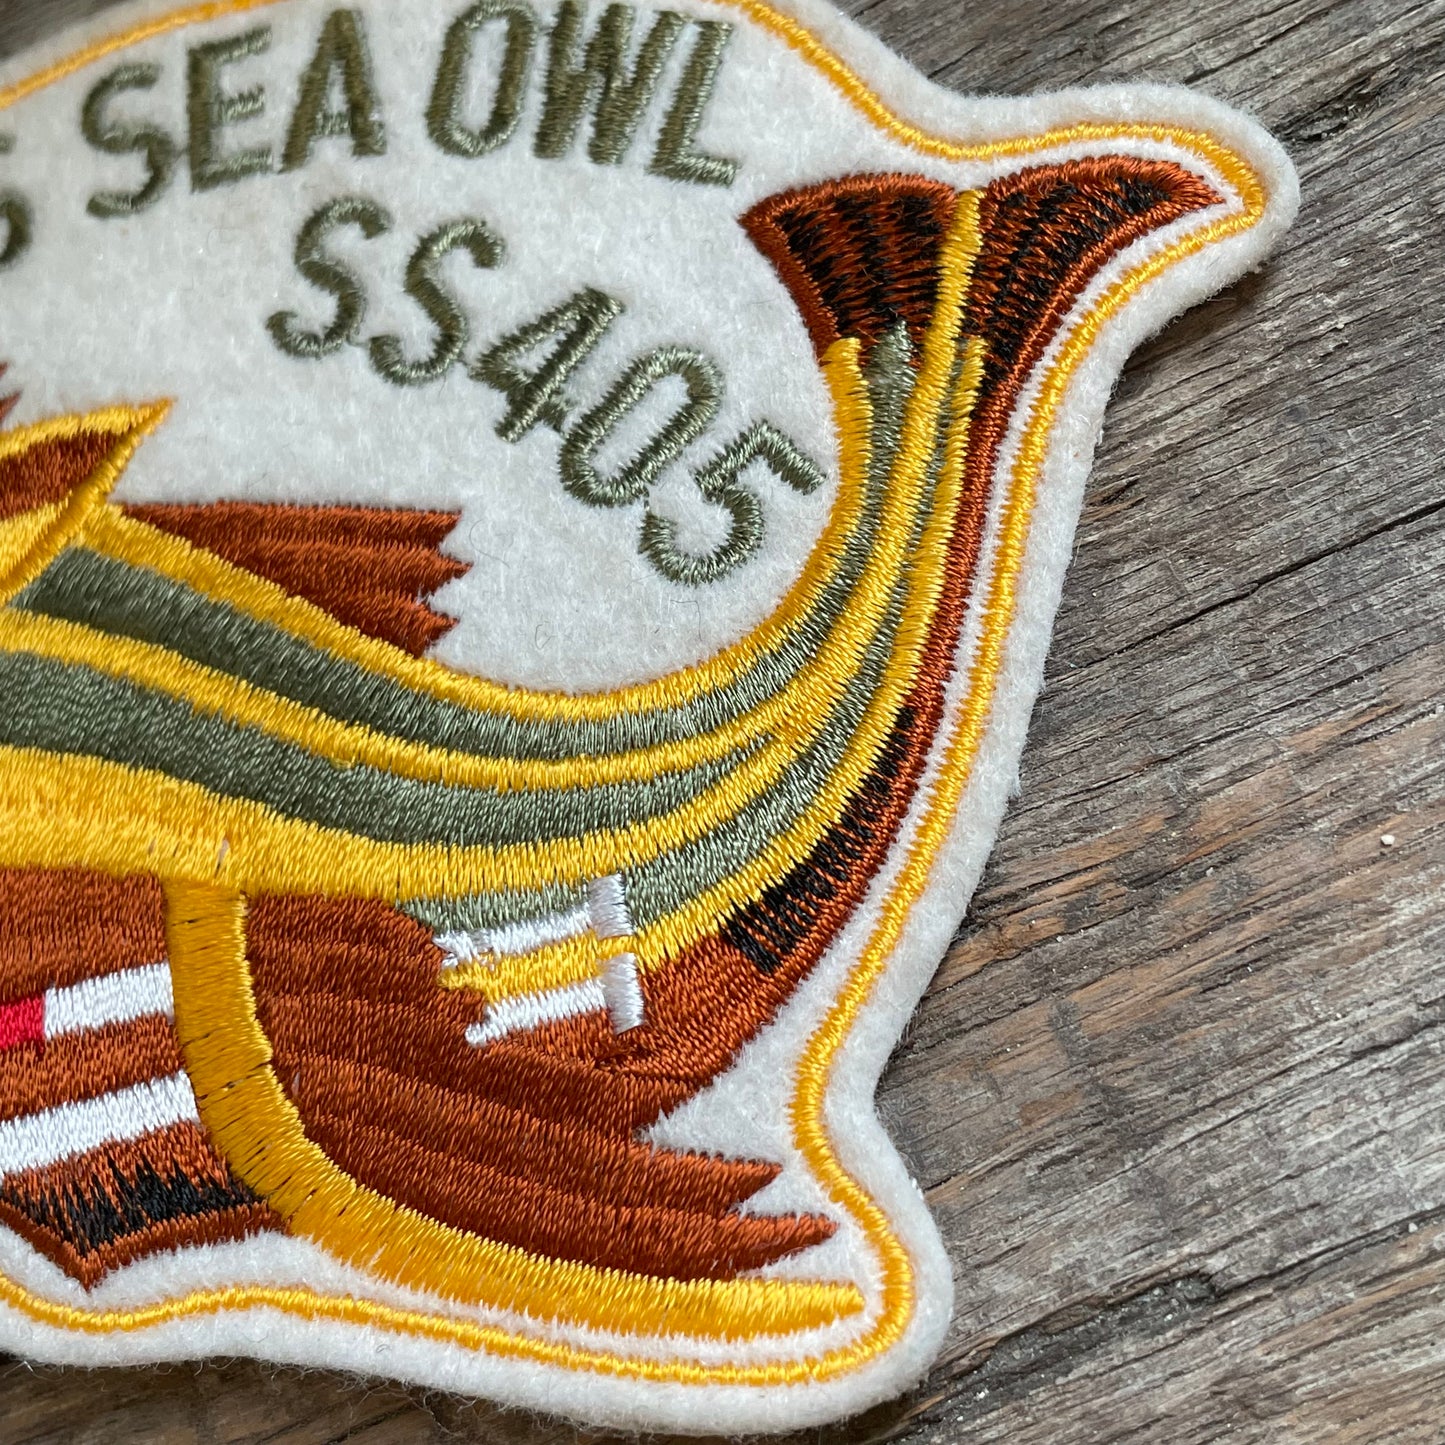 【USA vintage】USS SEA OWL ワッペン